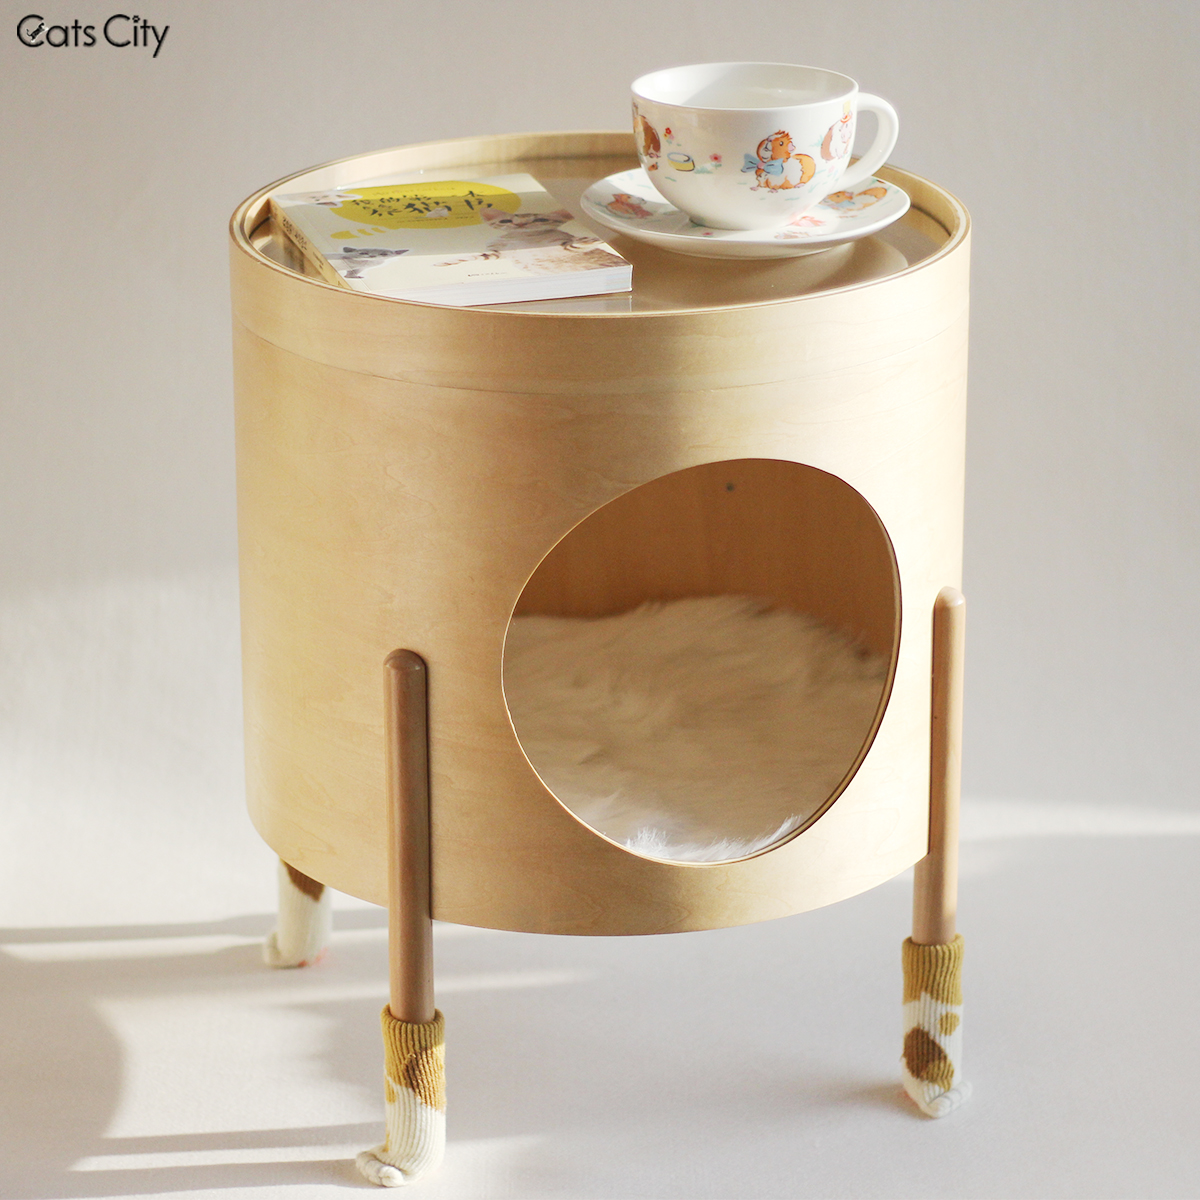 catscity原創設計 北歐風木製人貓共用圓形茶几貓窩 邊幾床頭櫃 邊櫃